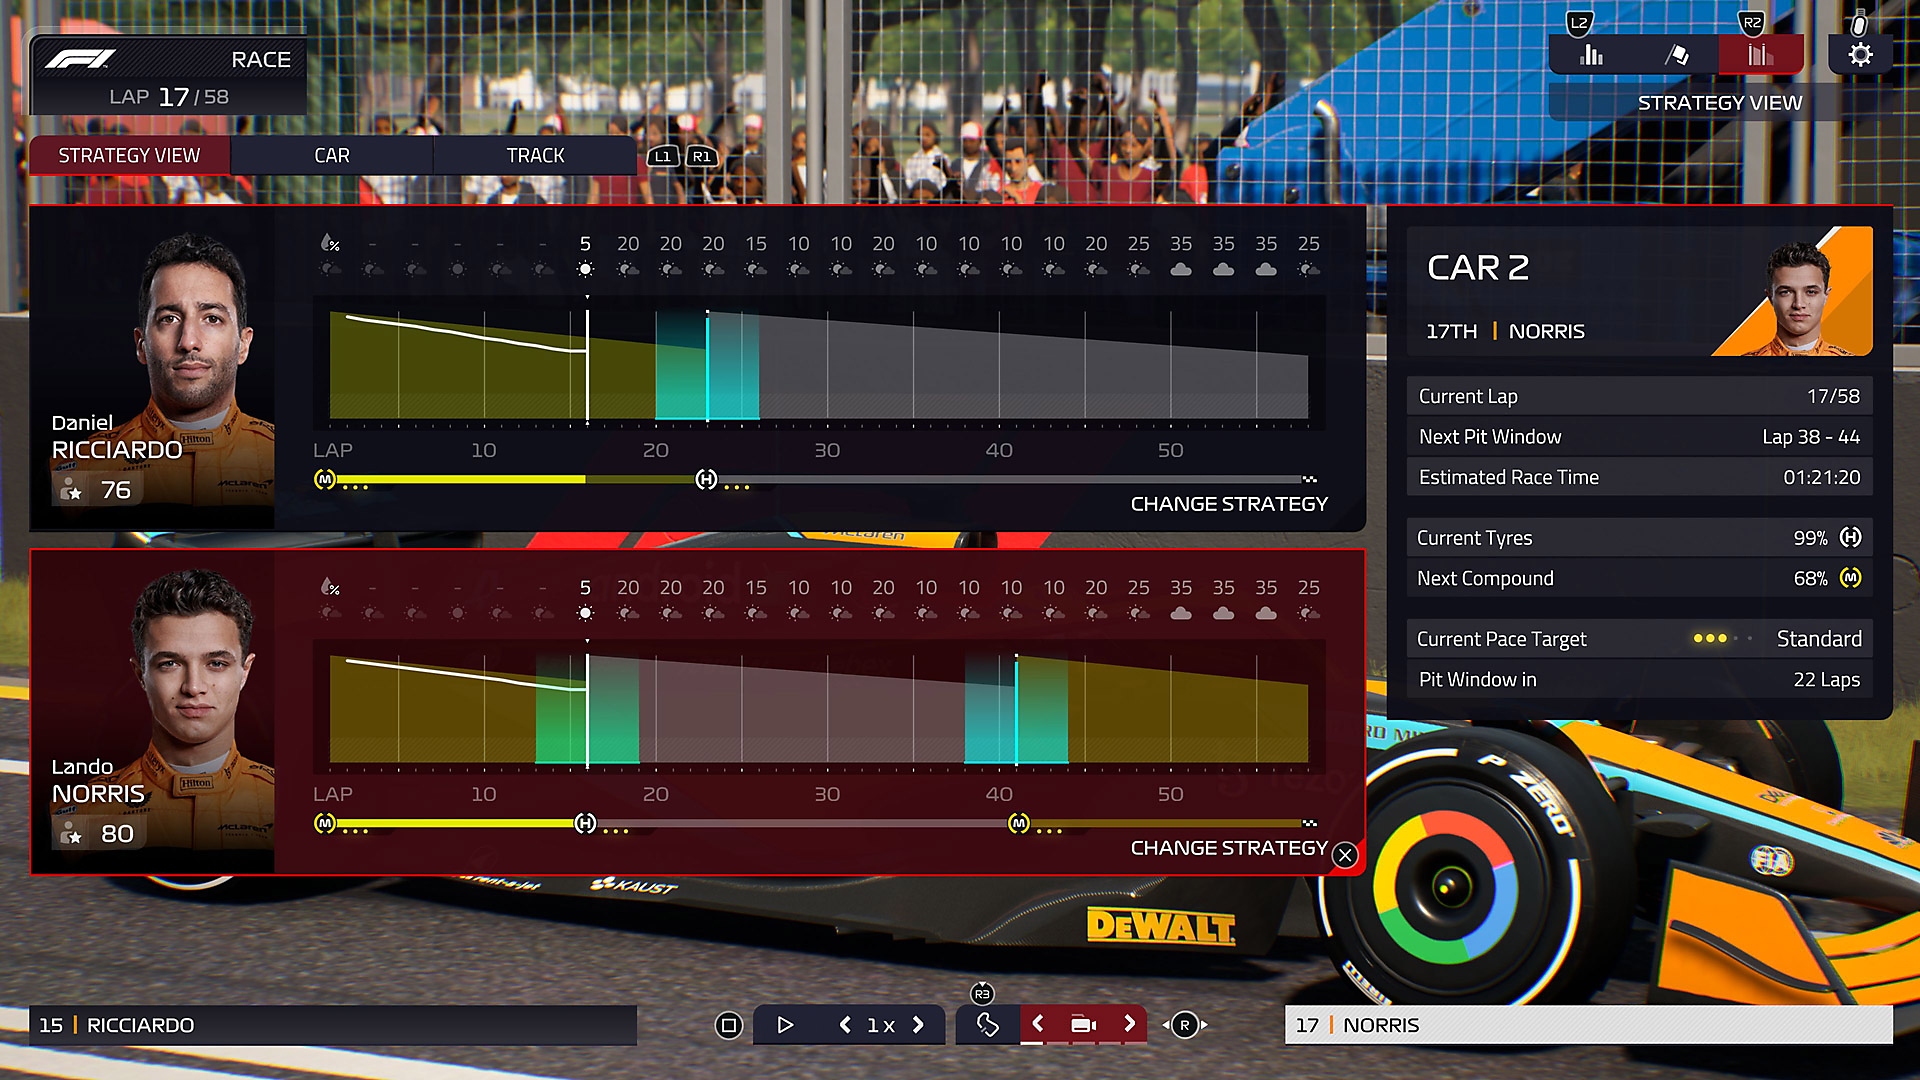 F1 Manager 2022 – snímek obrazovky s uživatelským rozhraním hry při porovnání dvou závodníků